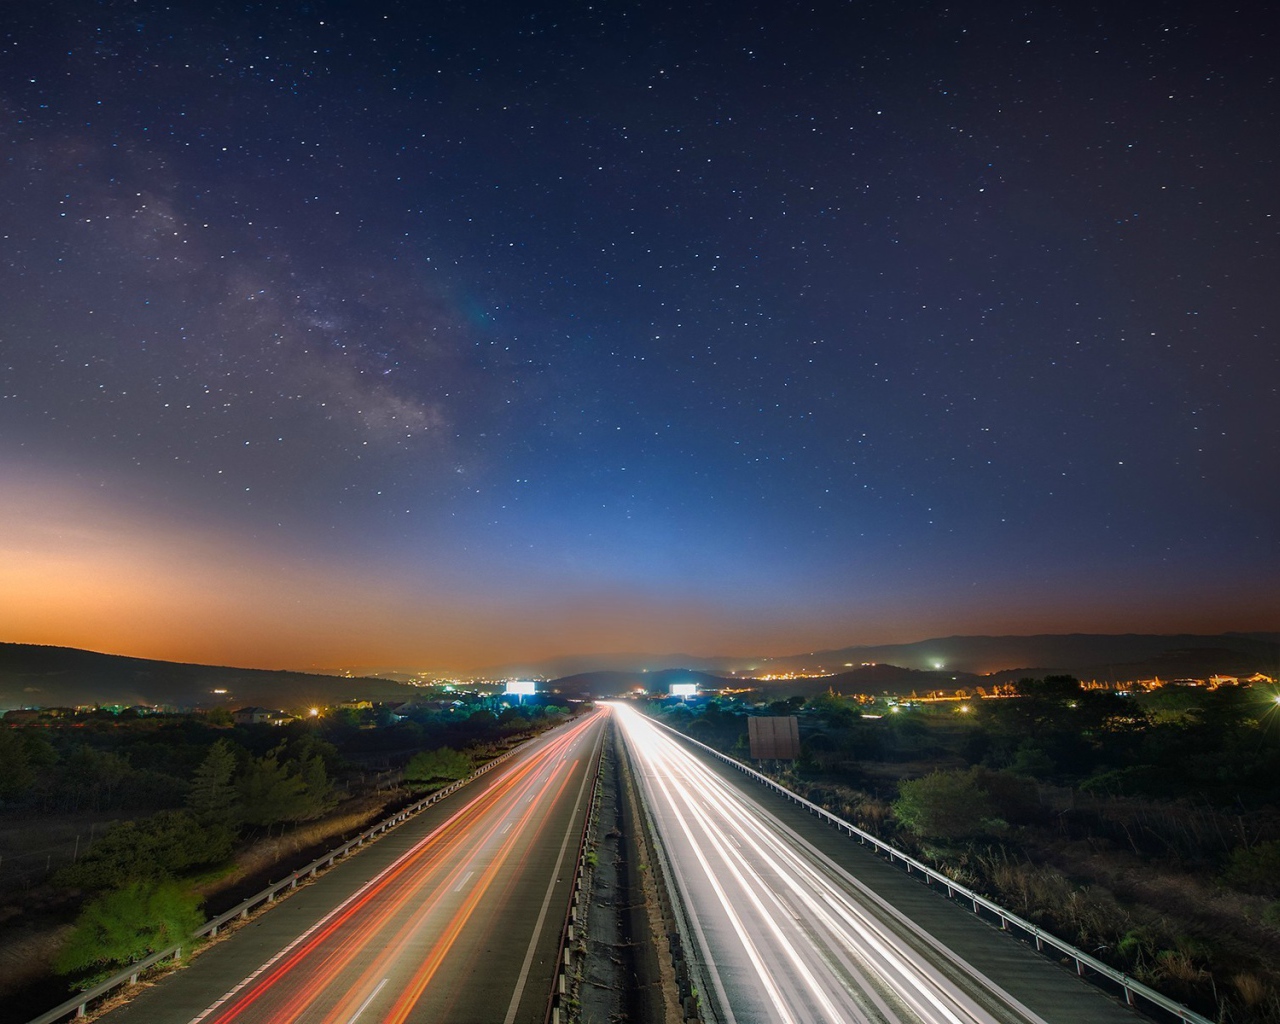 Ночное движение на магистрали под звездами